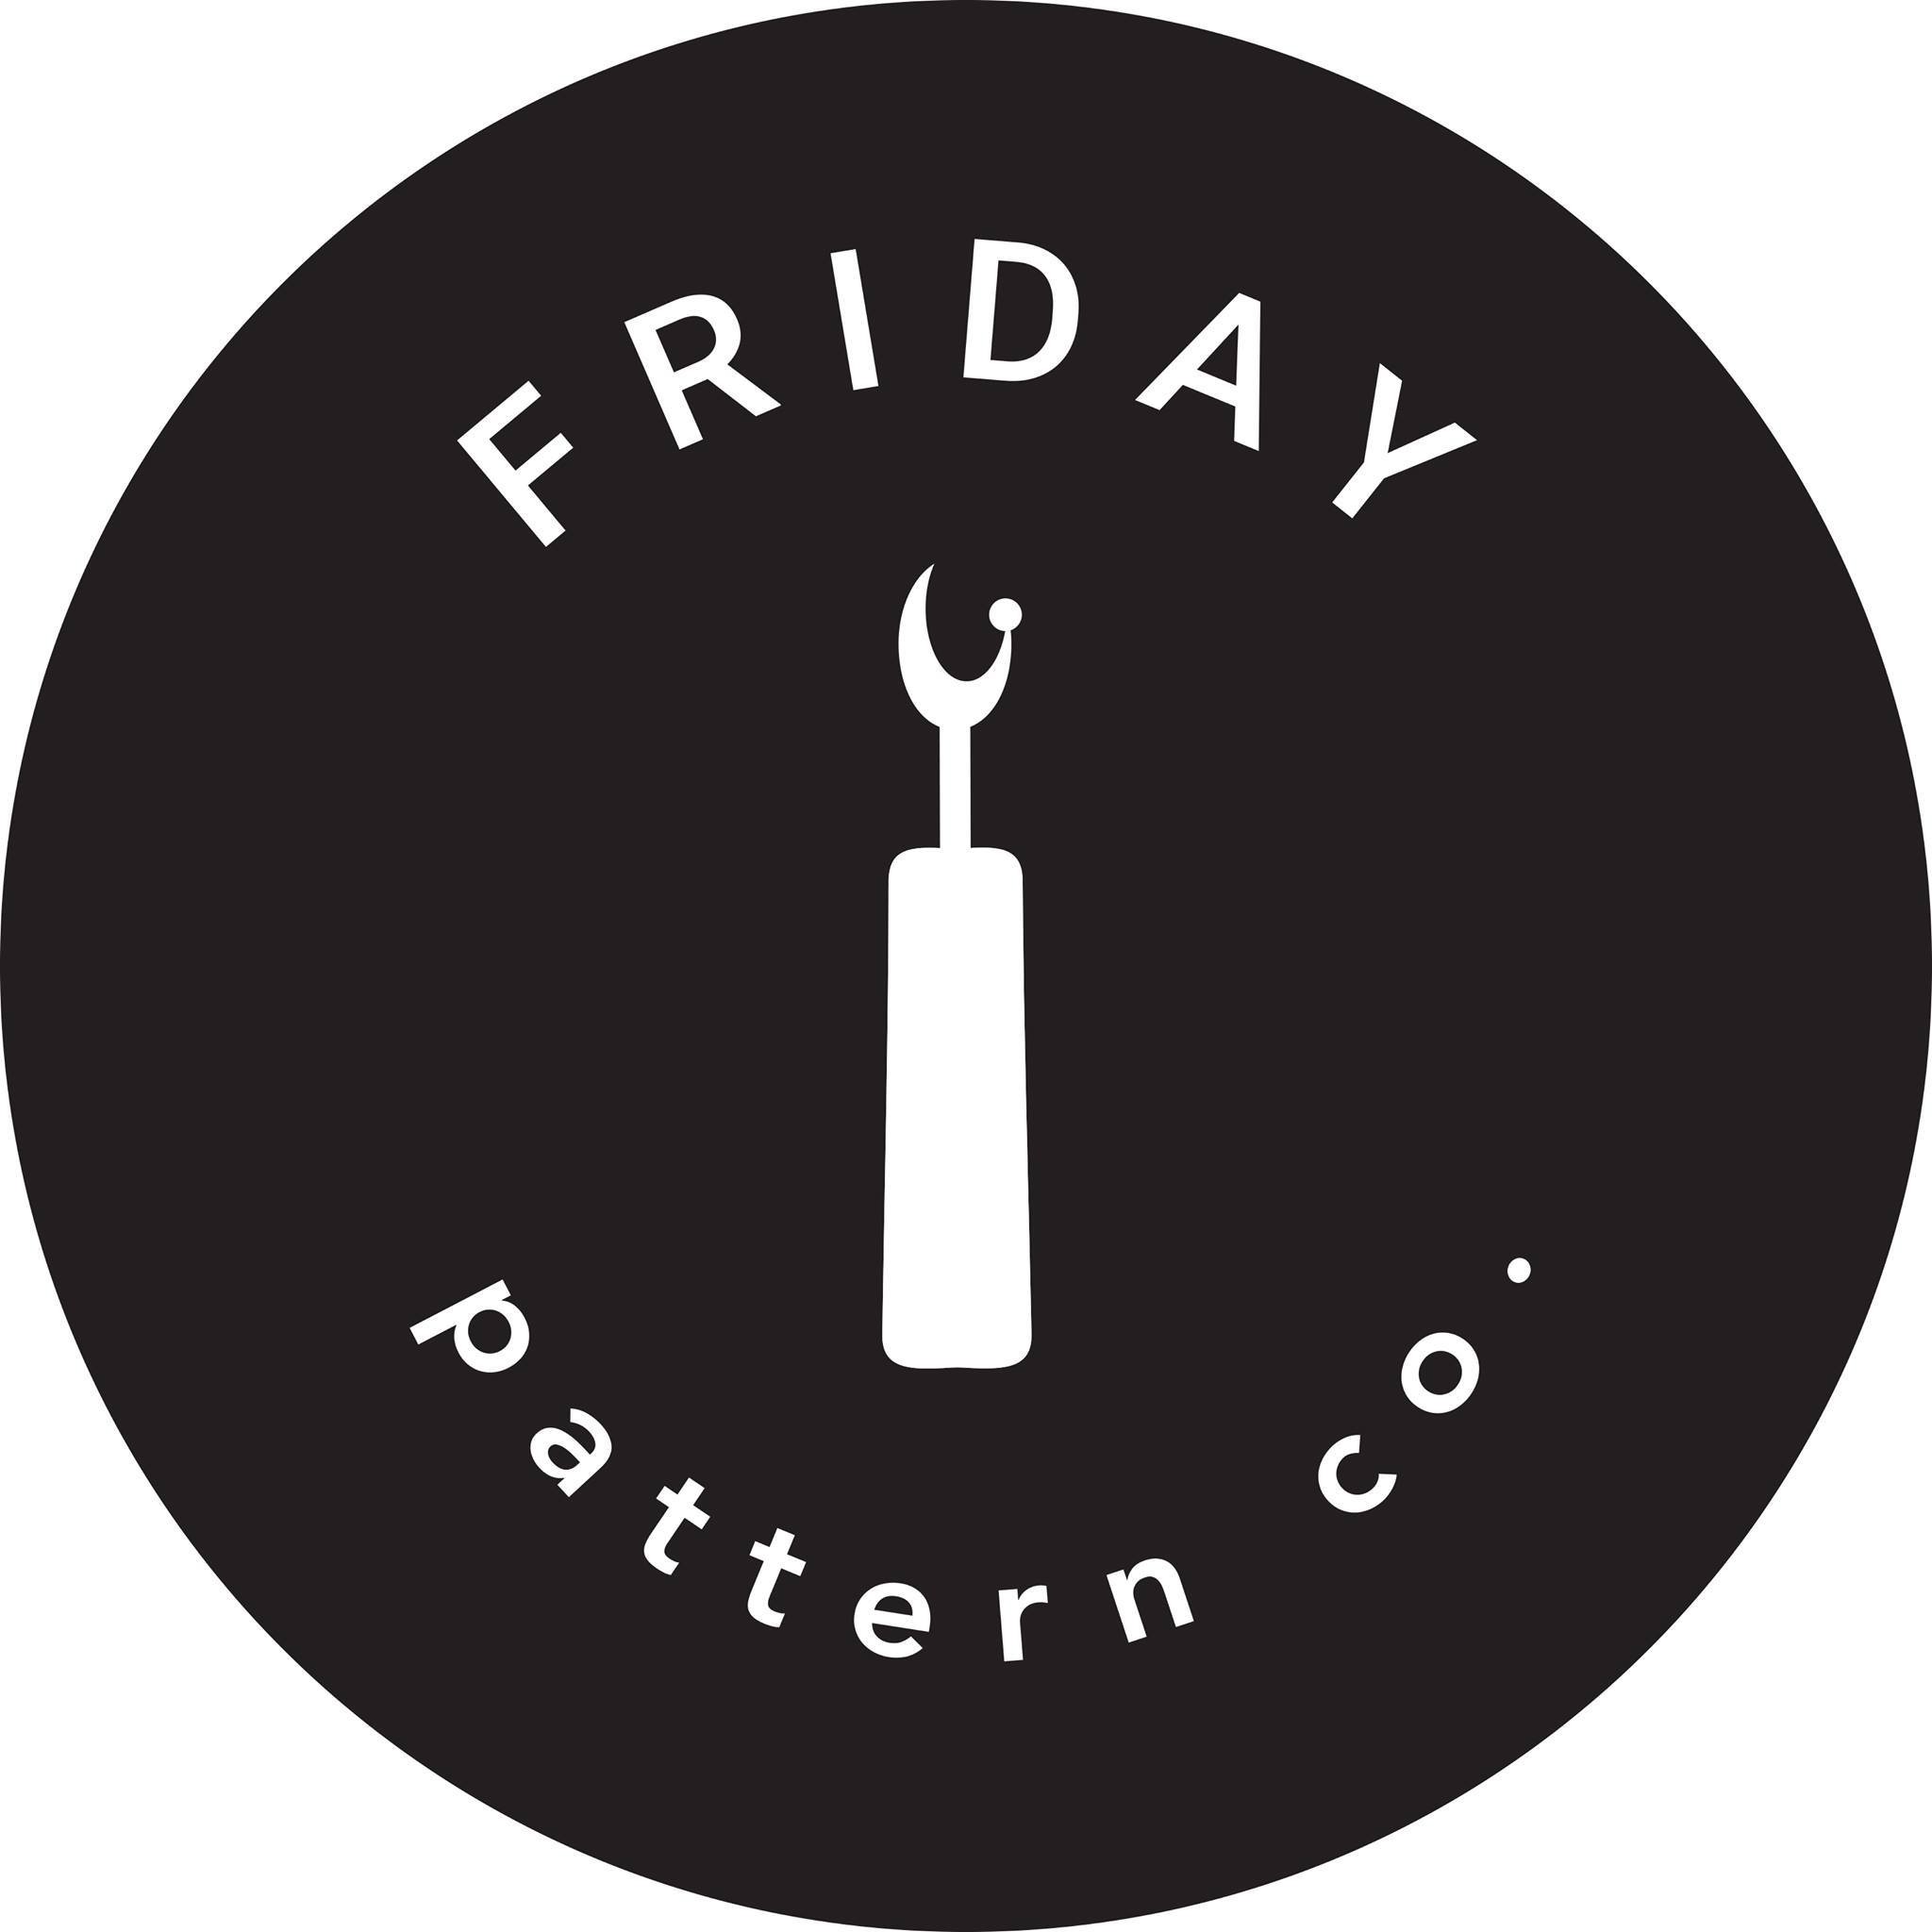 Friday Pattern Company